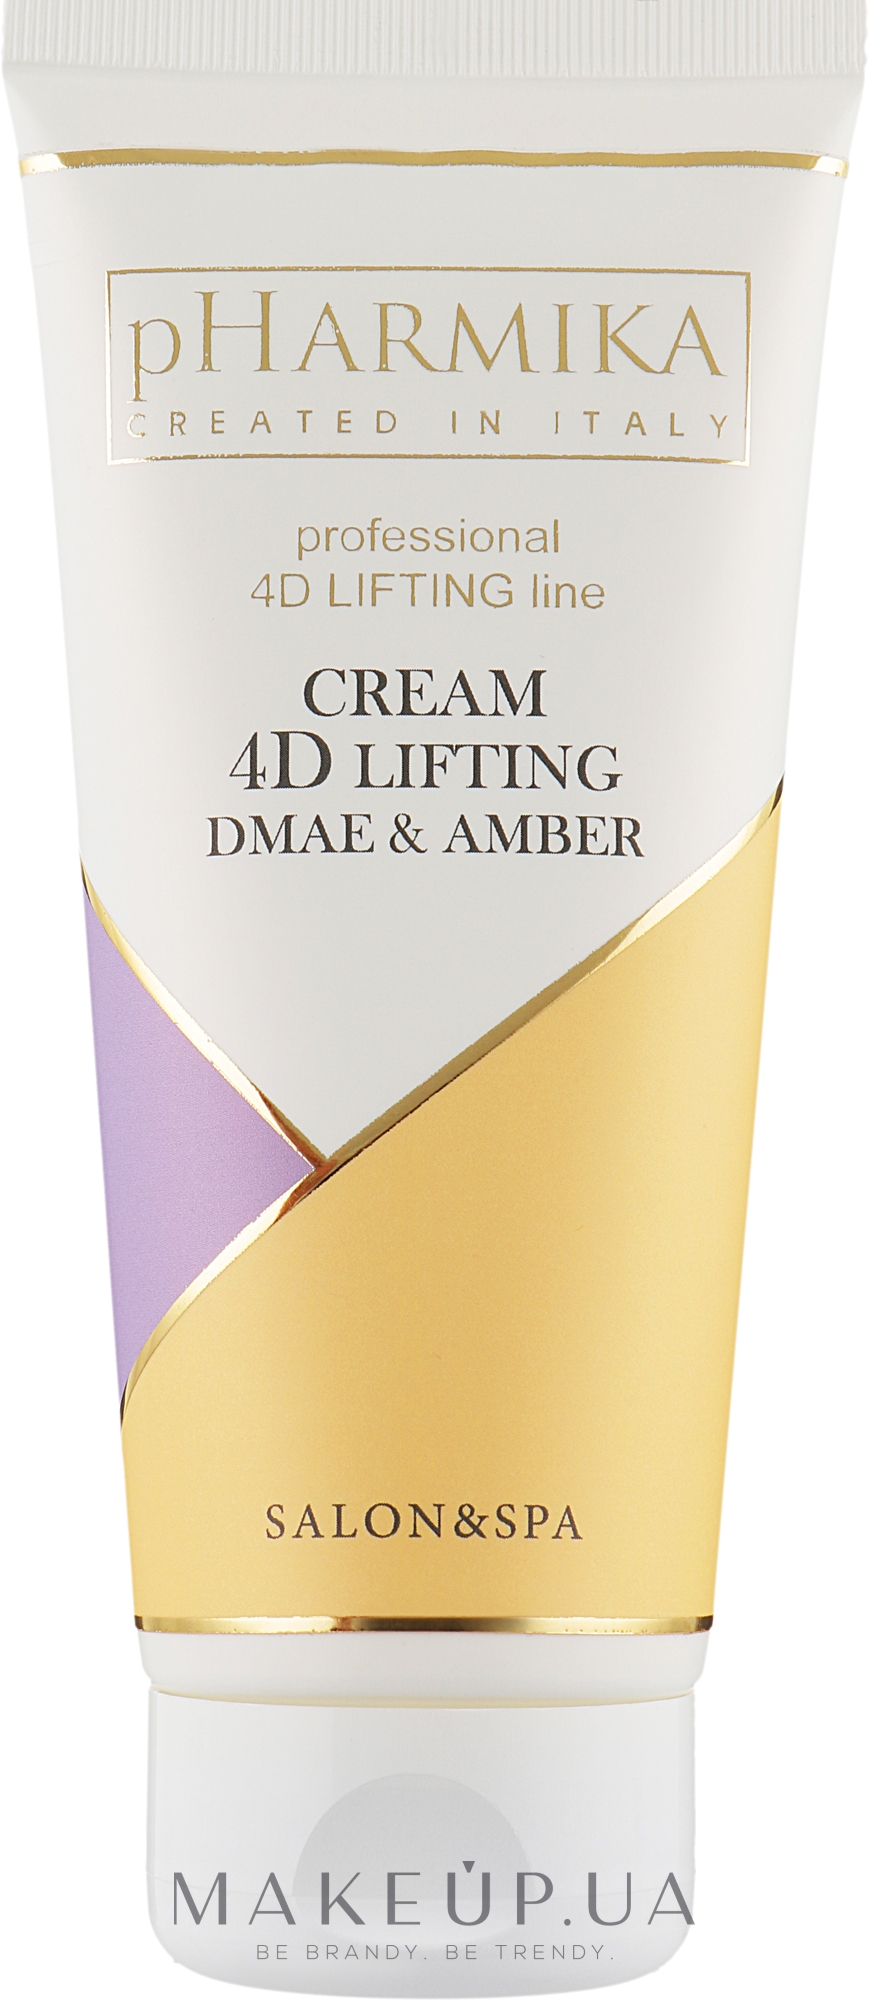 Крем для лица "4 D лифтинг" - pHarmika Cream 4 D Lifting Dmae & Amber — фото 200ml